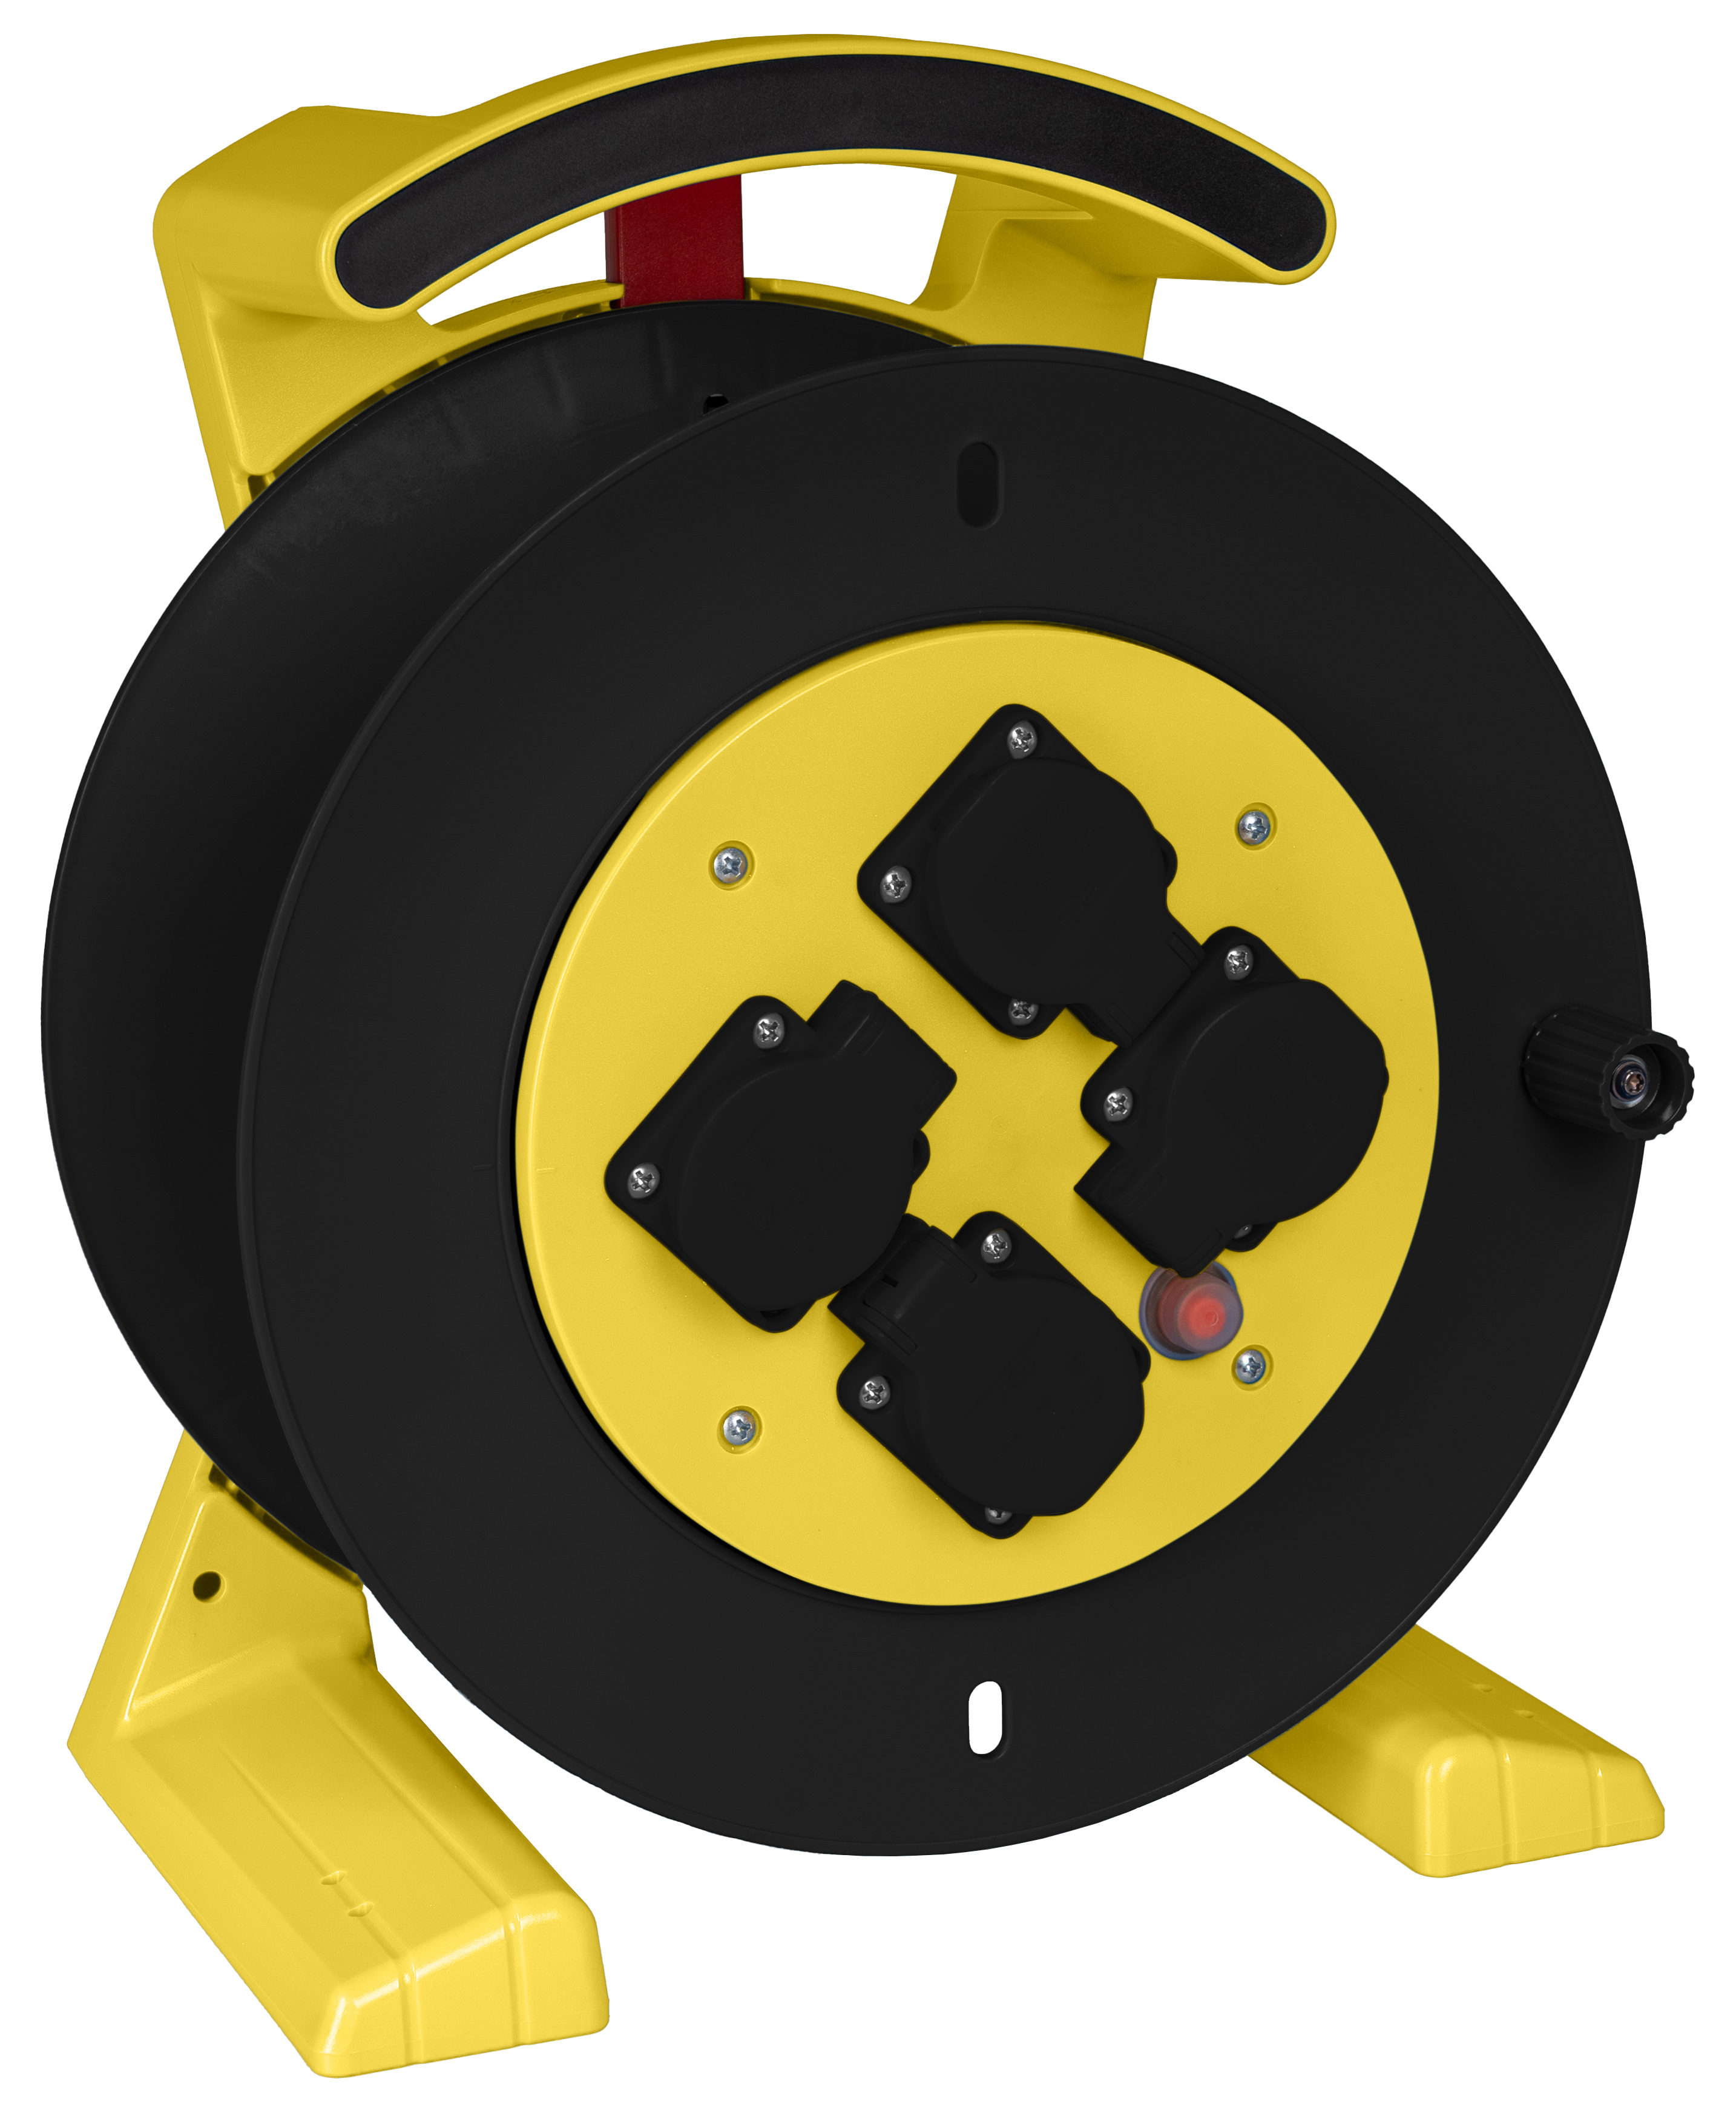 Leerkabeltrommel in gelb-schwarz, 4 x Schutzkontakt-Steckdose JUMBO L 2.0